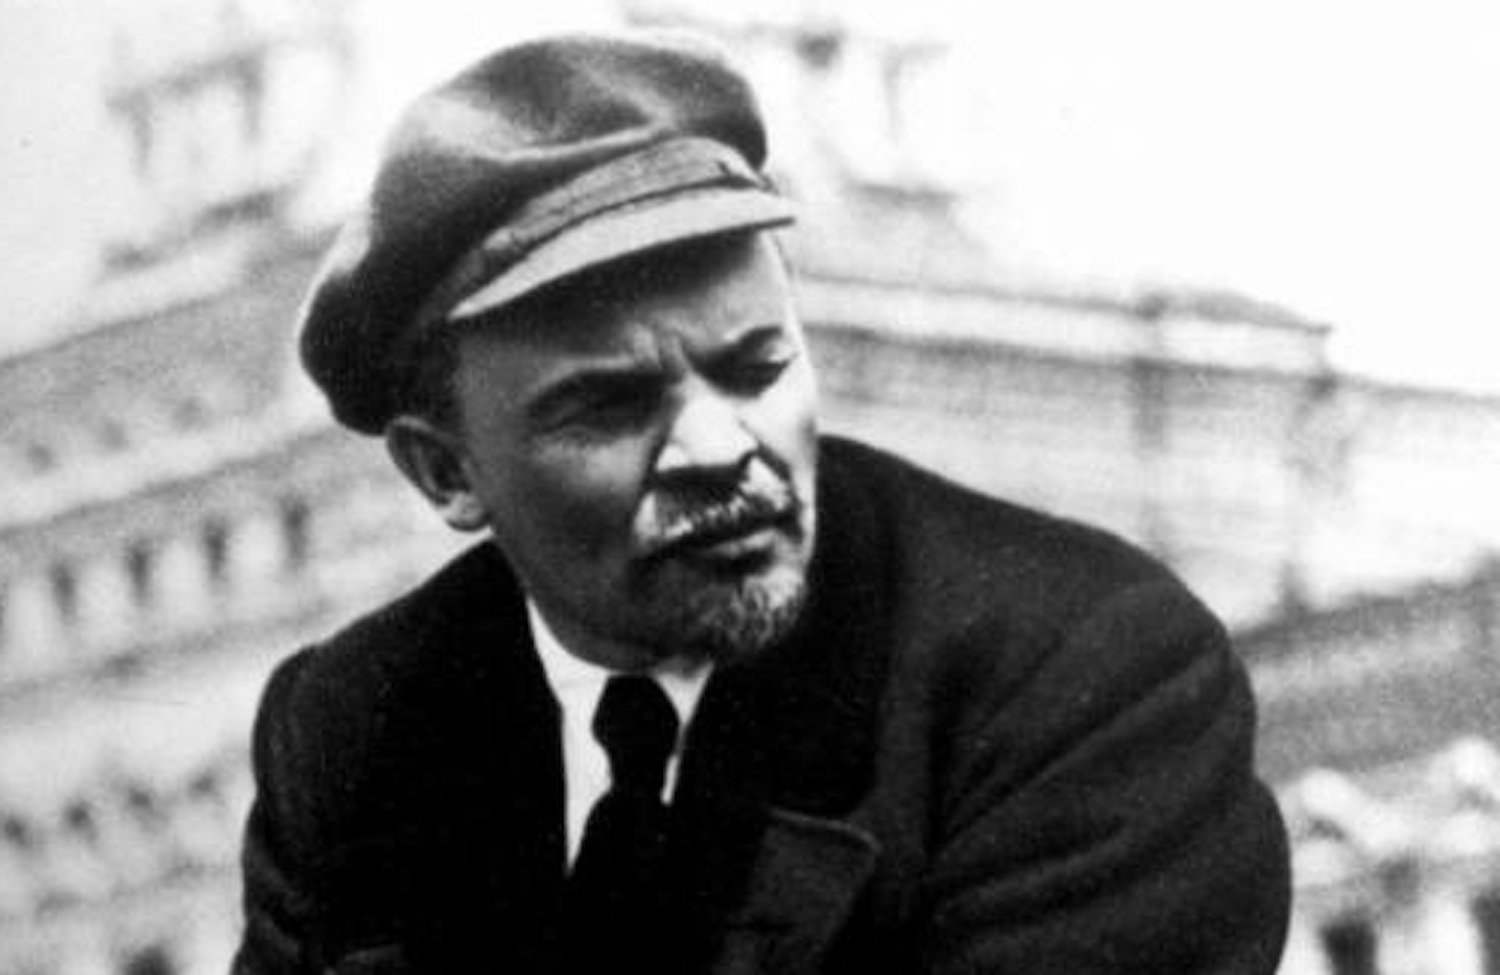 Ζει ο Λένιν; H φωτογραφία που δημιούργησε ερωτήματα (φωτο)